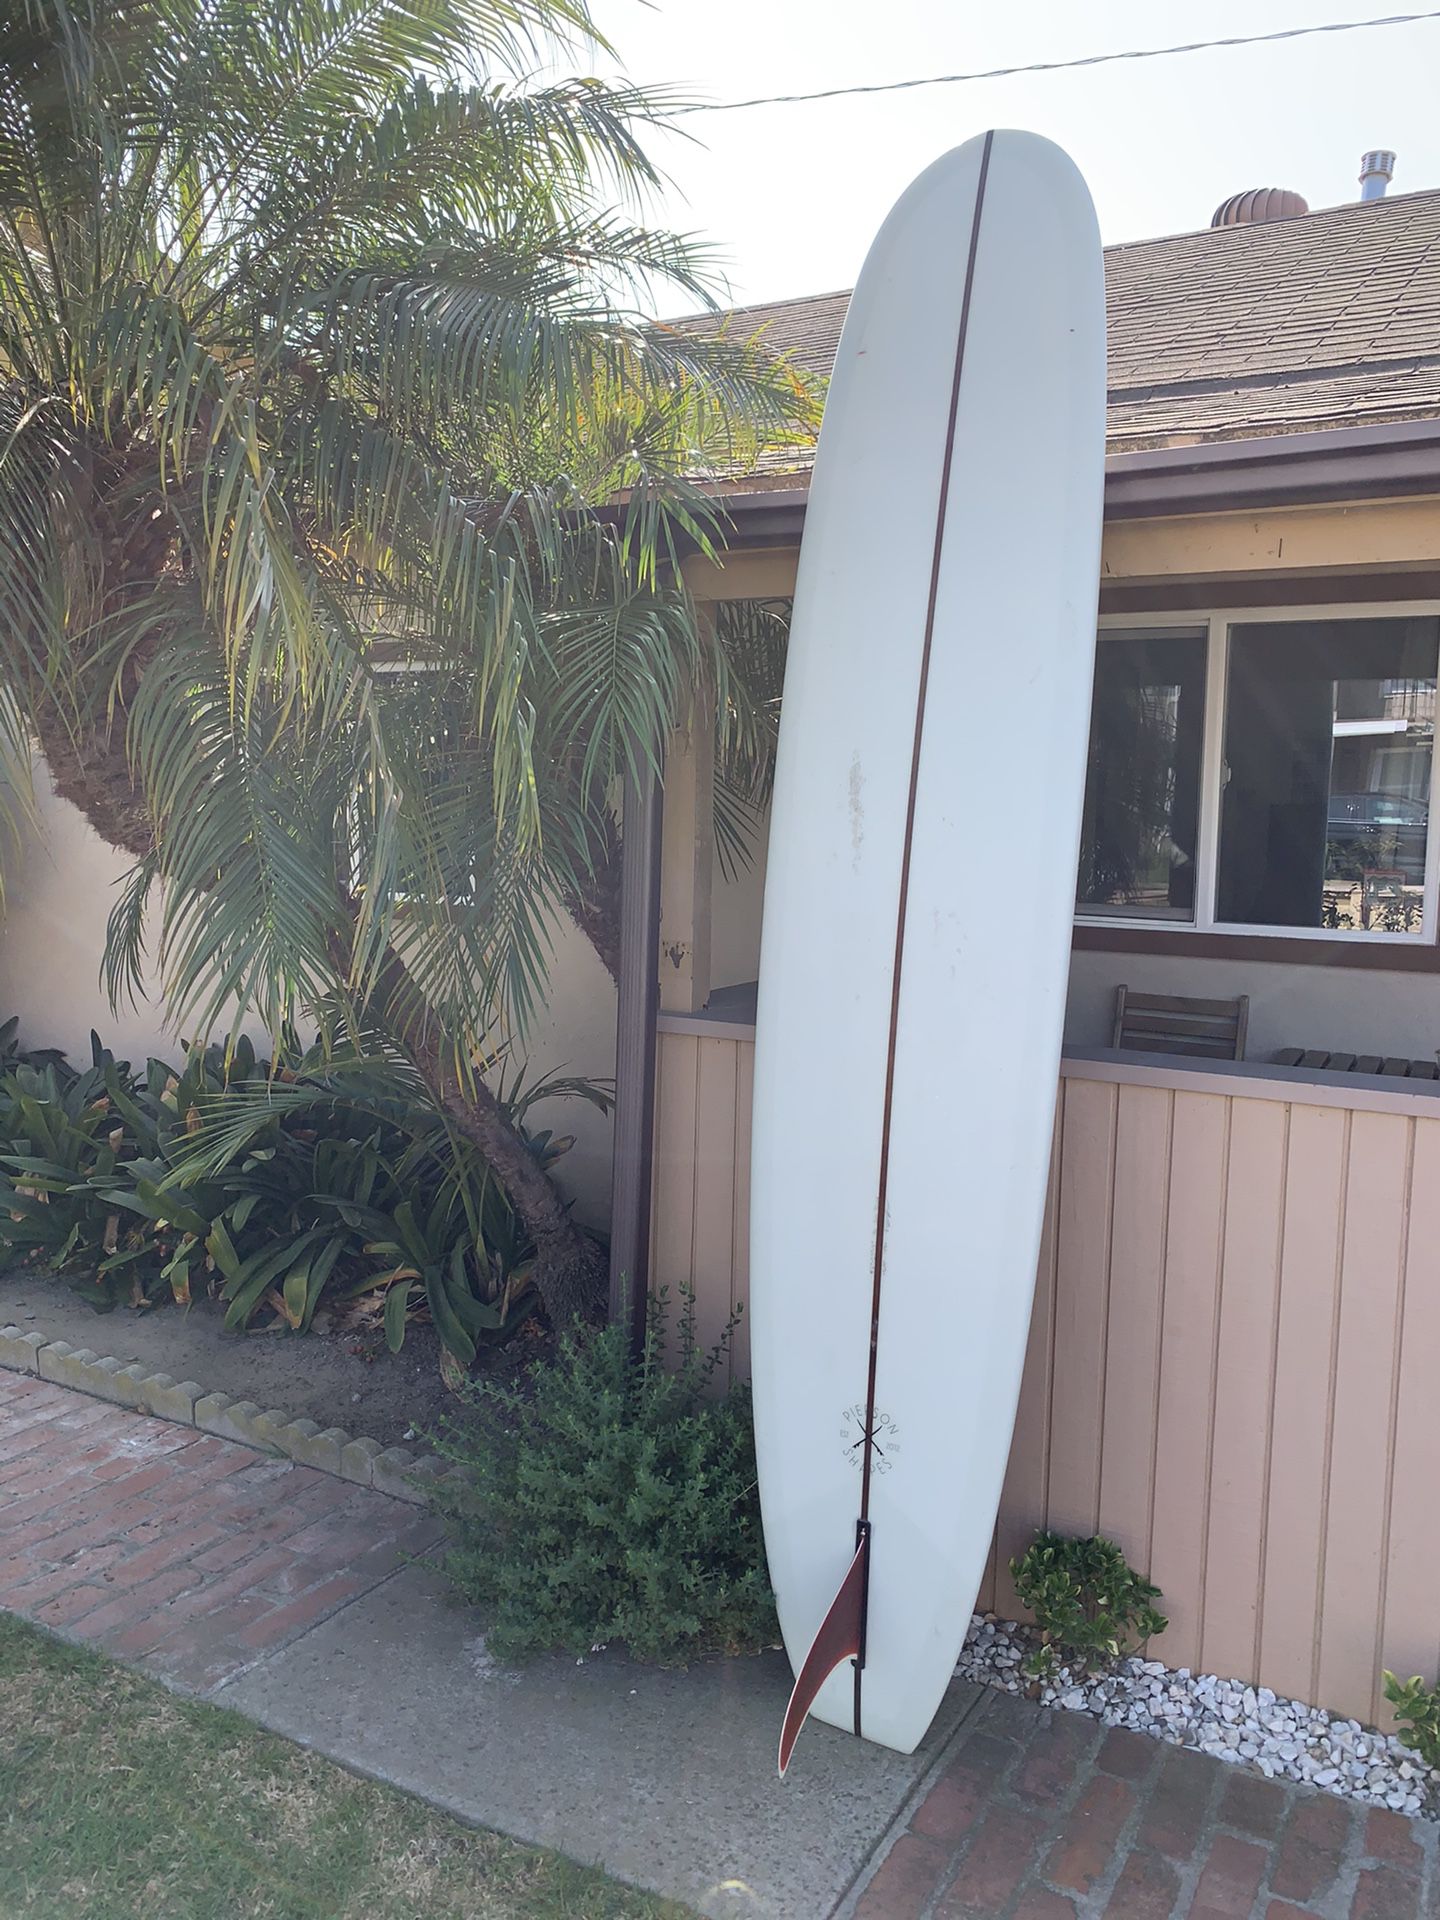 Longboard surfboard